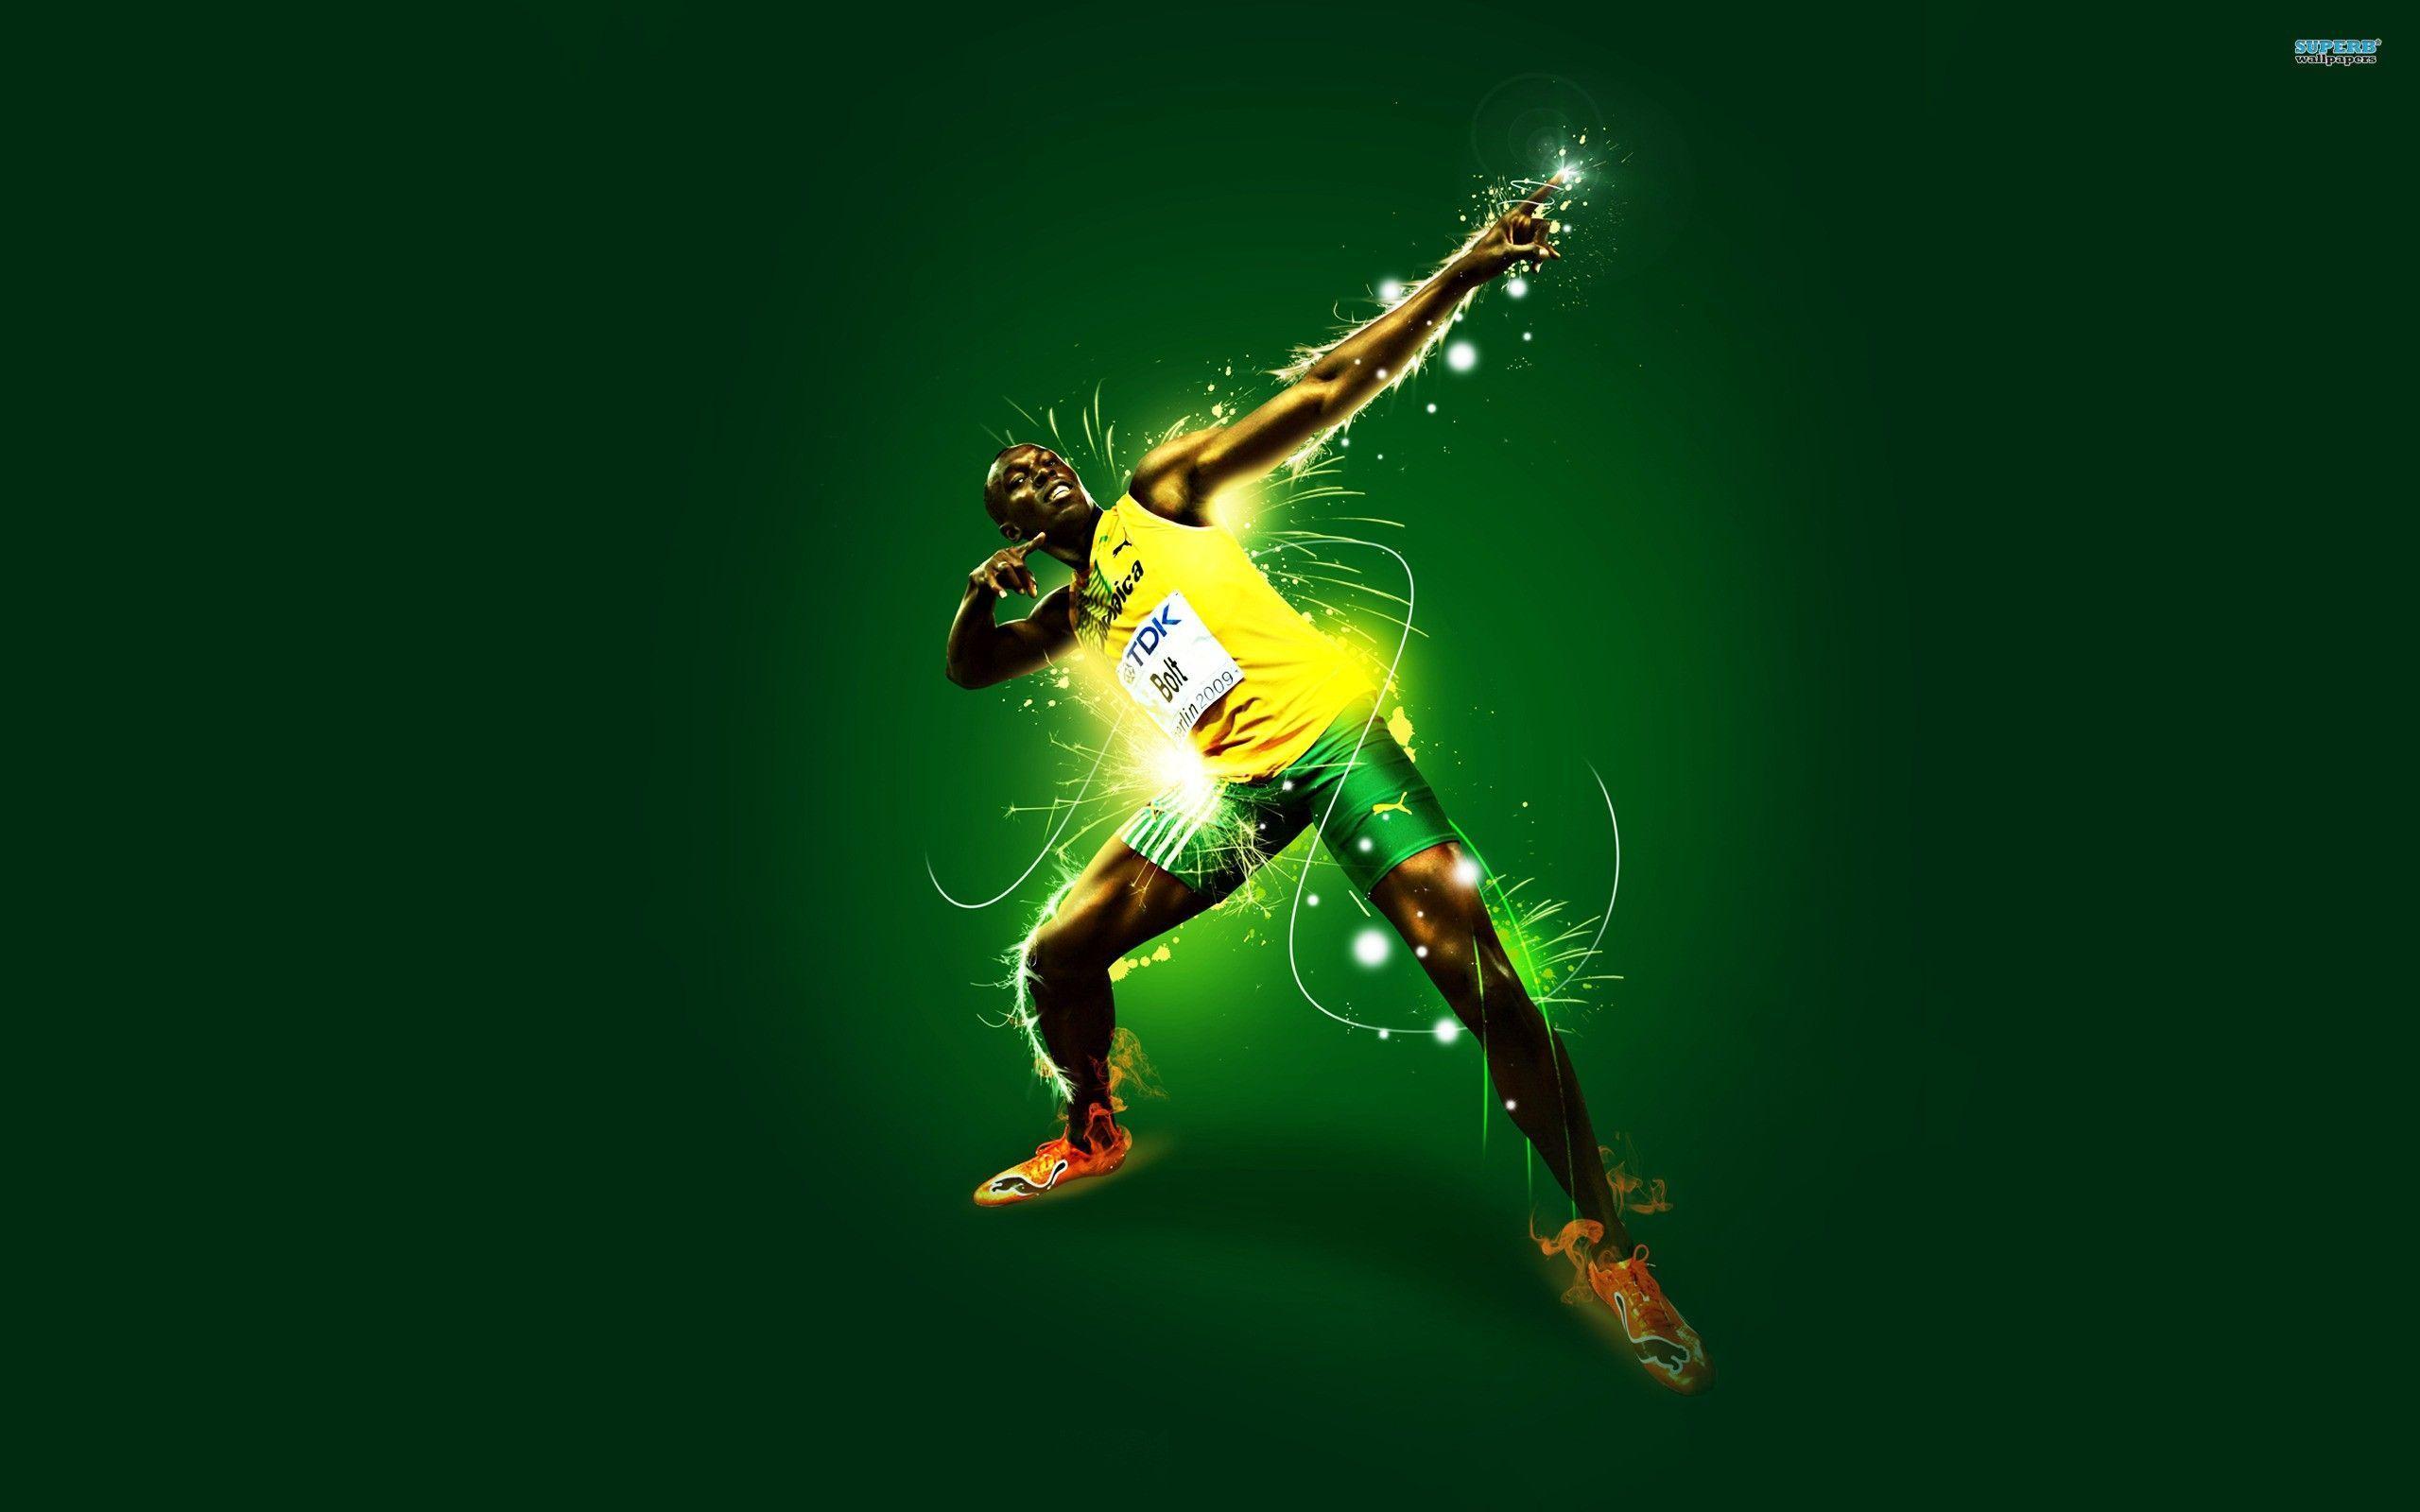 Usain Bolt Wallpapers 2015 Olympics Wallpaper Cave HD Wallpapers Download Free Images Wallpaper [wallpaper981.blogspot.com]